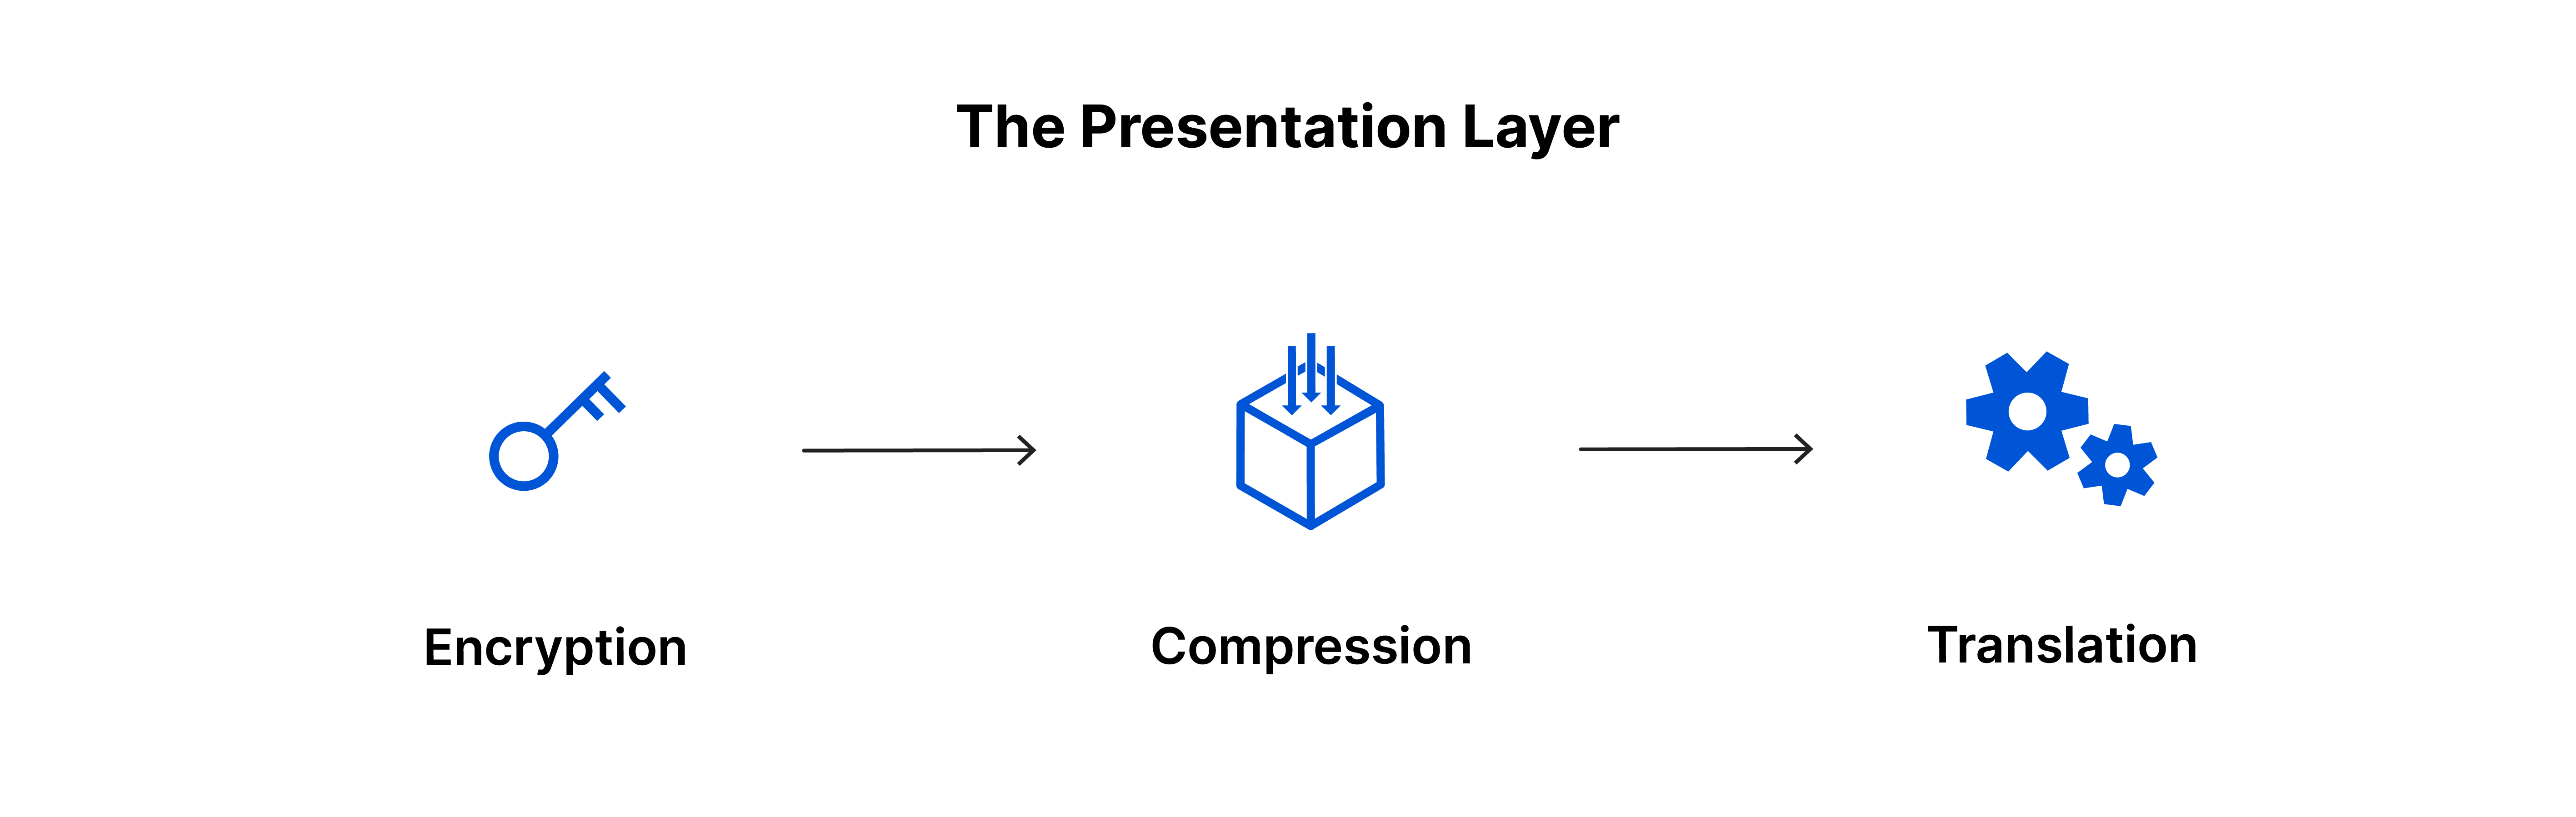 La couche de présentation : chiffrement, compression, traduction.